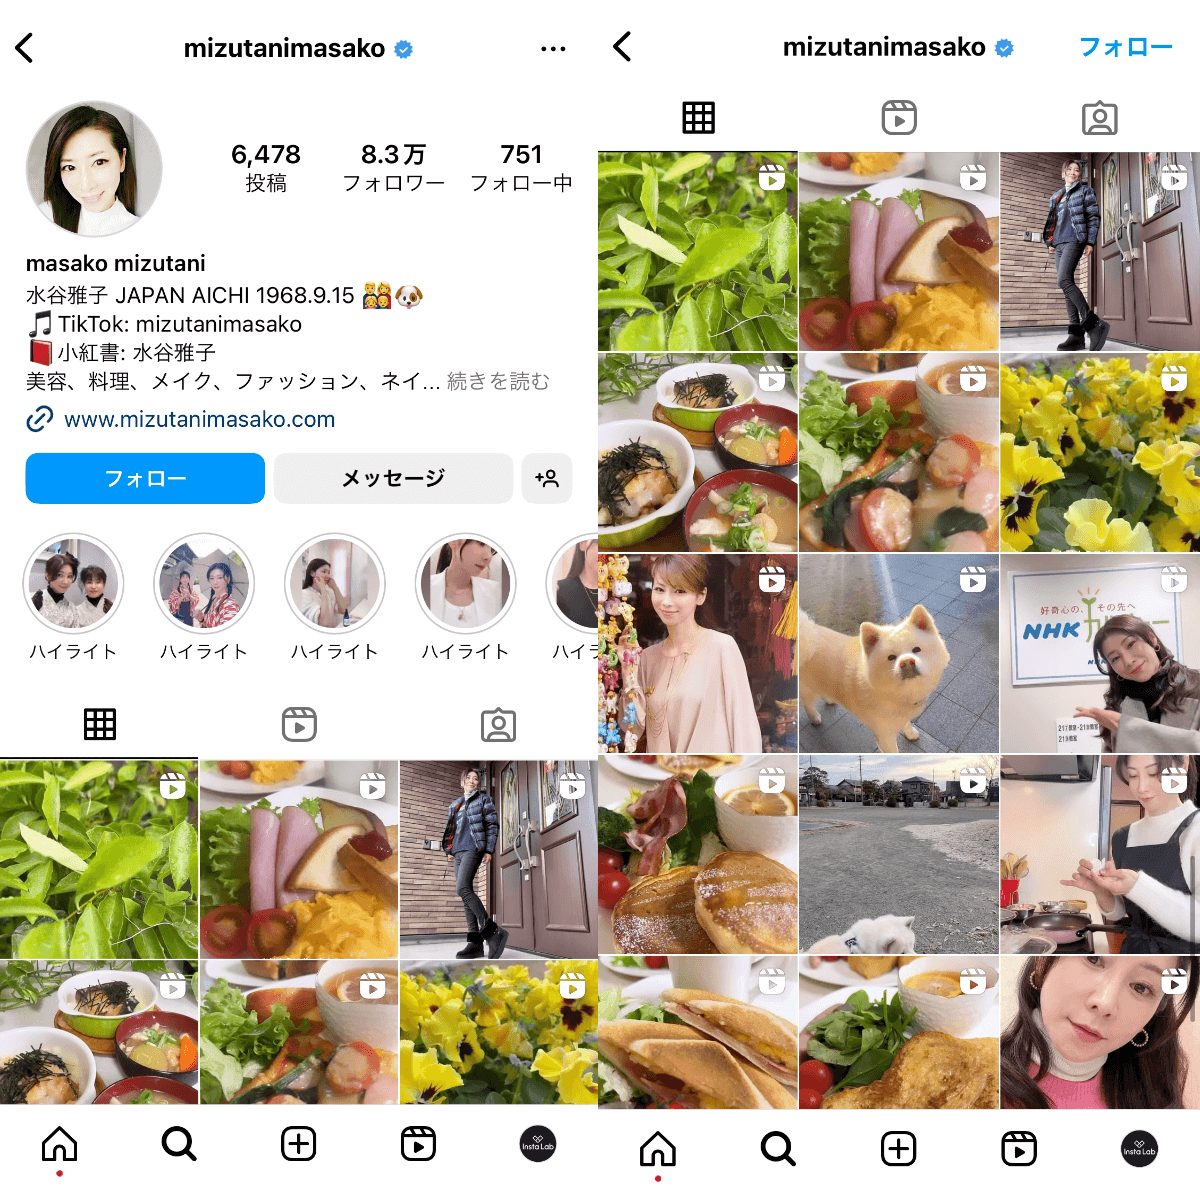 instagram-account-mizutanimasako